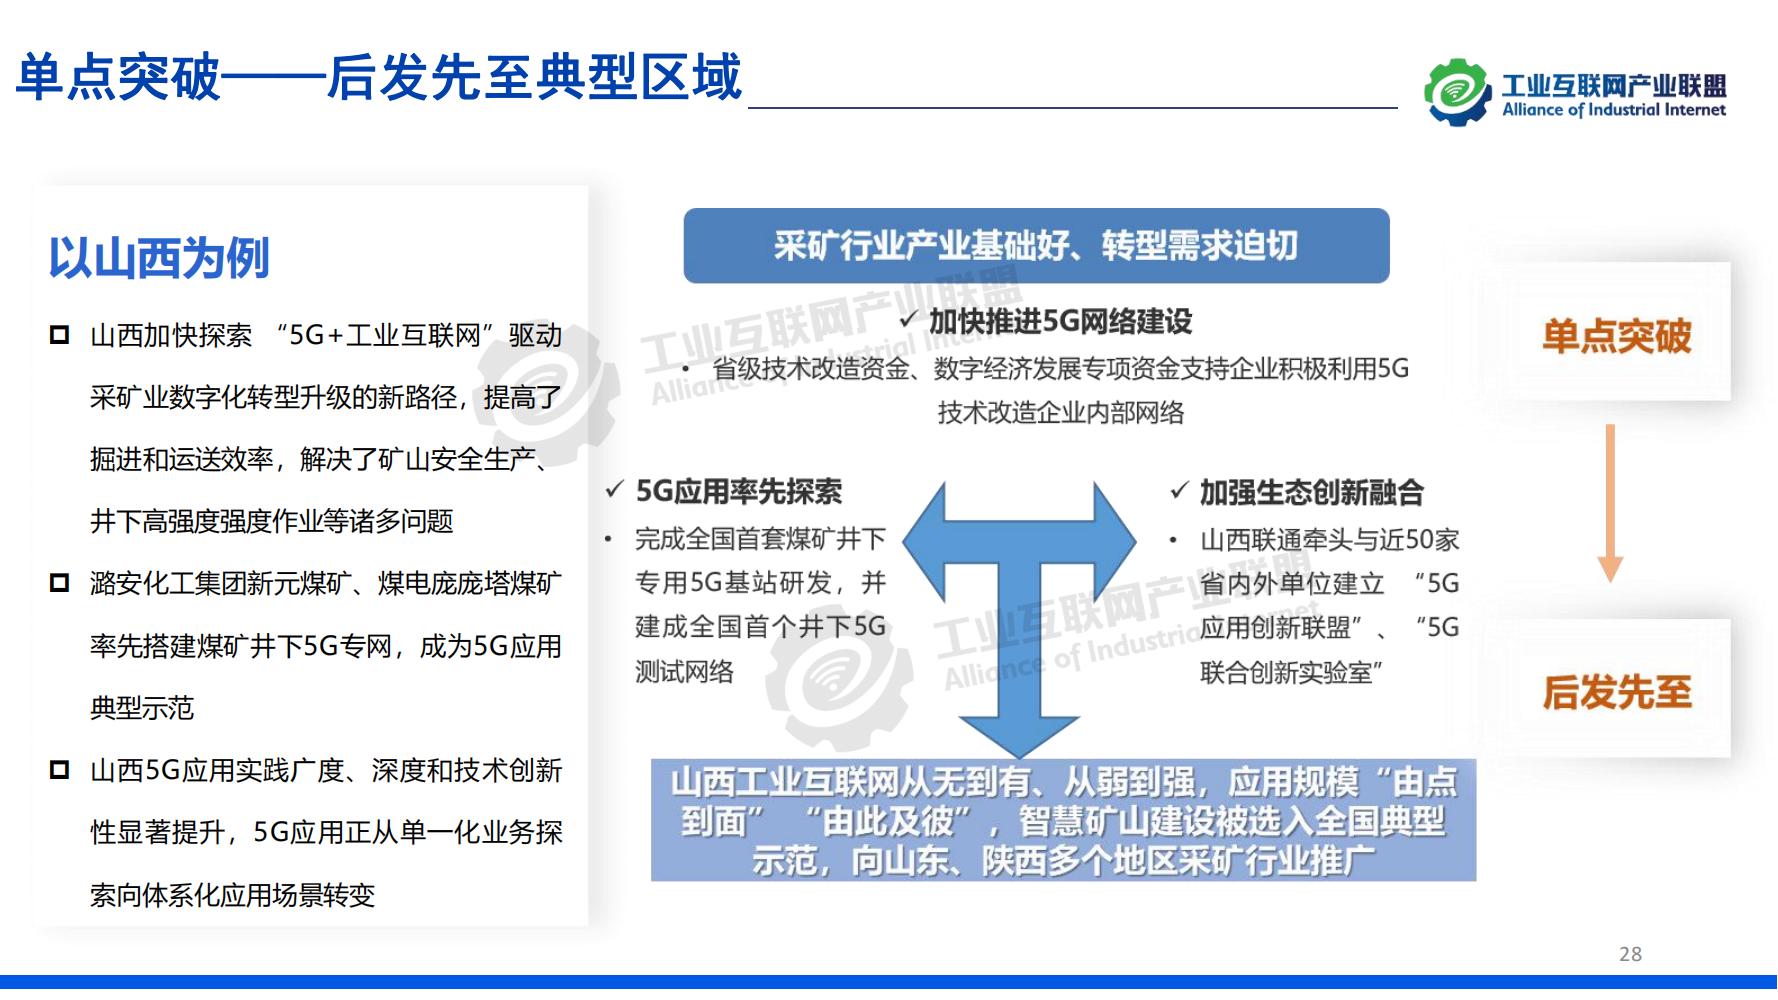 1-中国工业互联网发展成效评估报告-水印_27.jpg